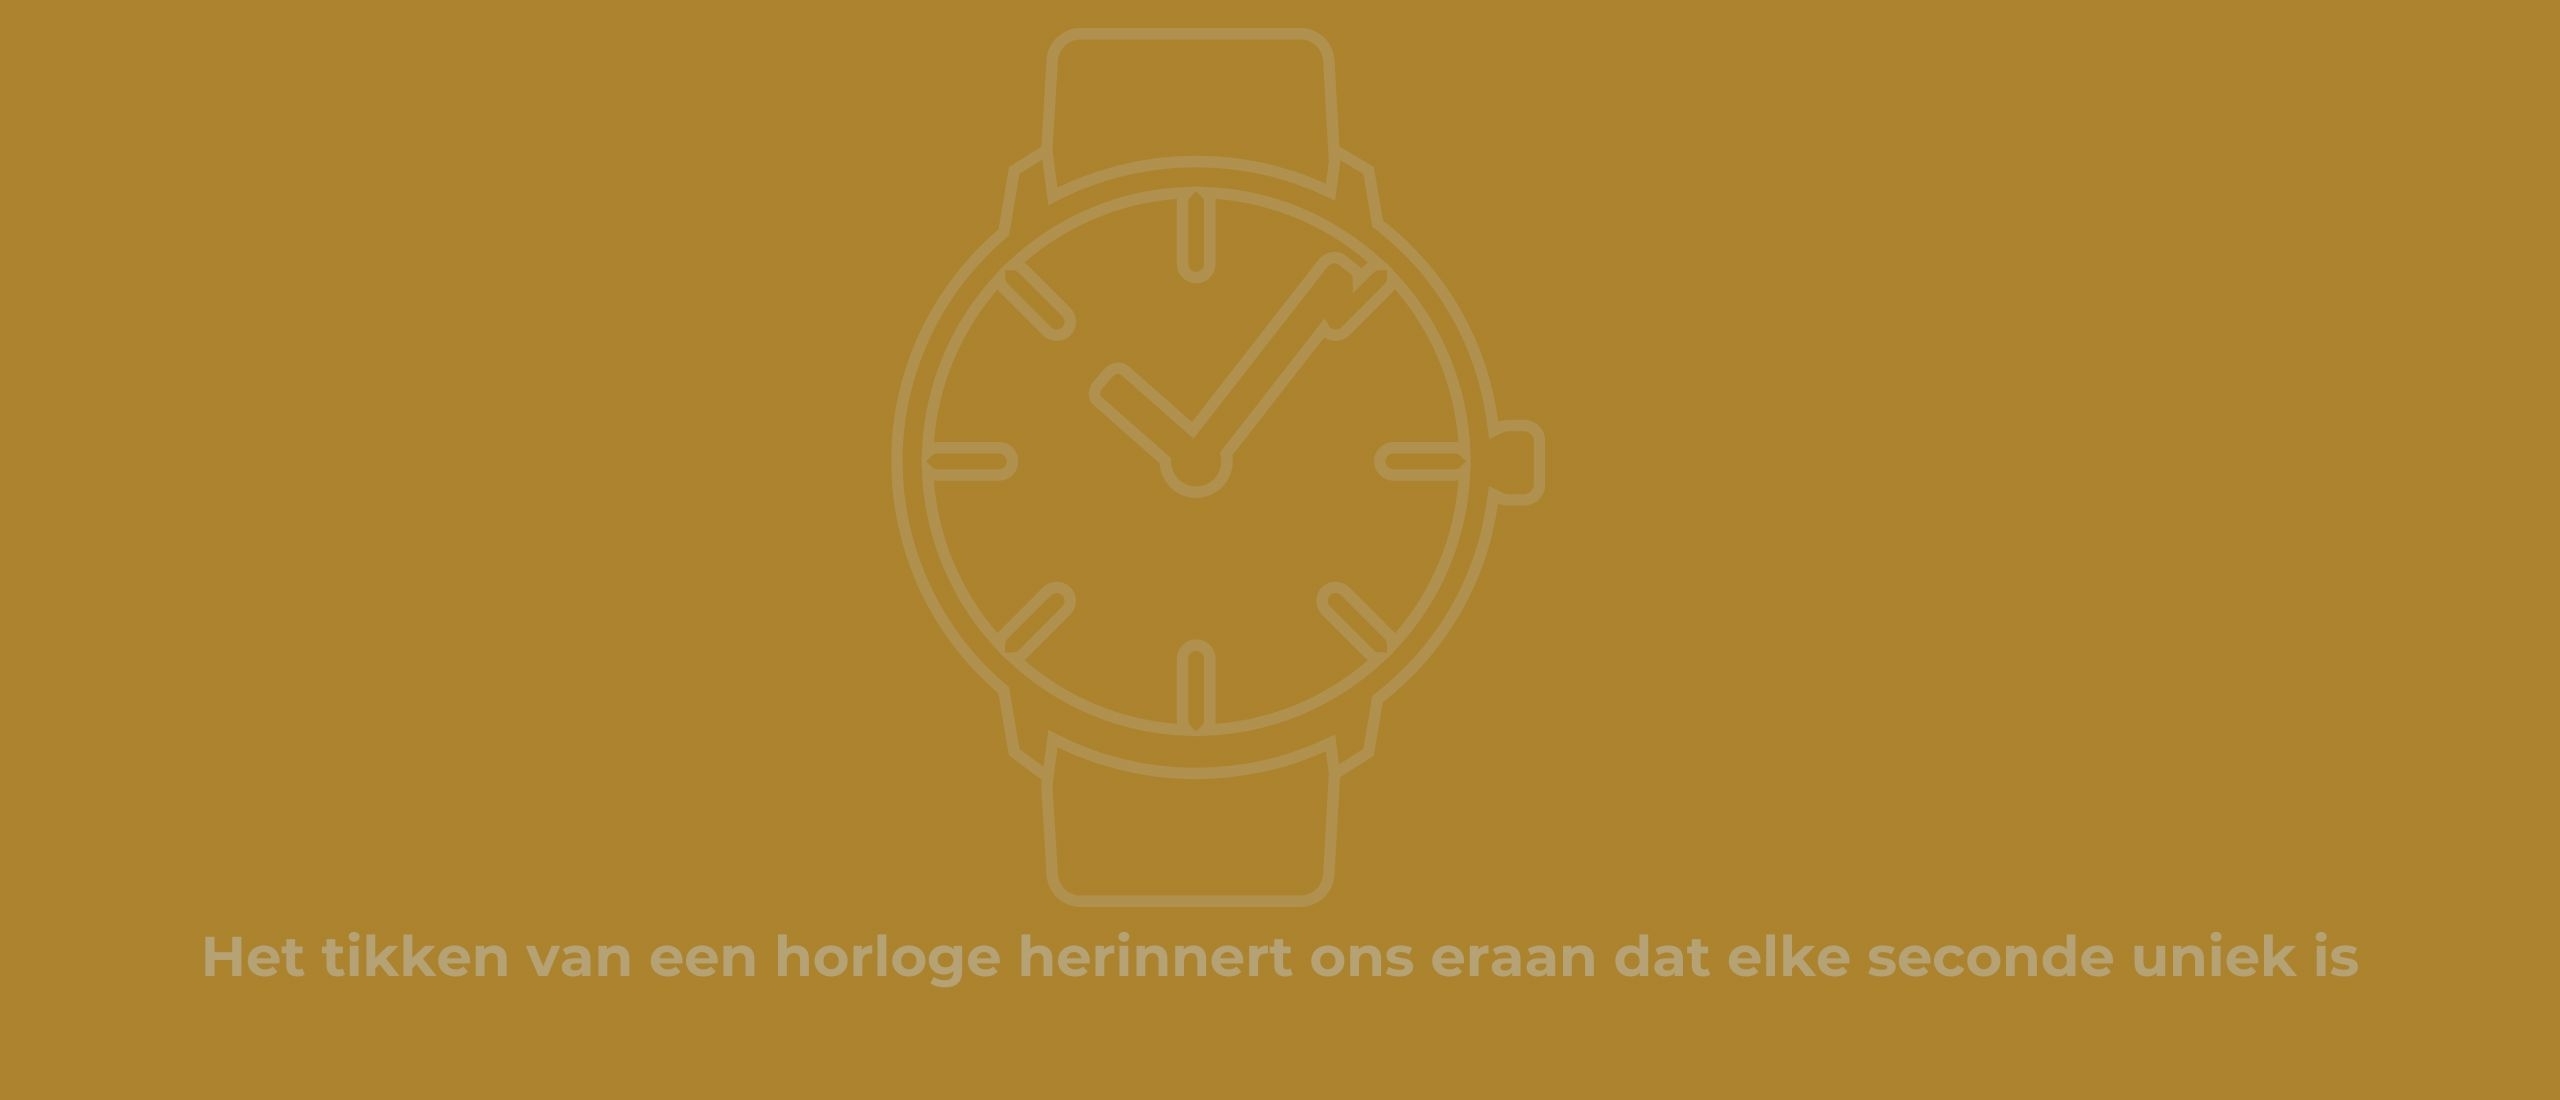 Nederlandse horlogemerken: de beste horloges van Nederlands fabrikaat